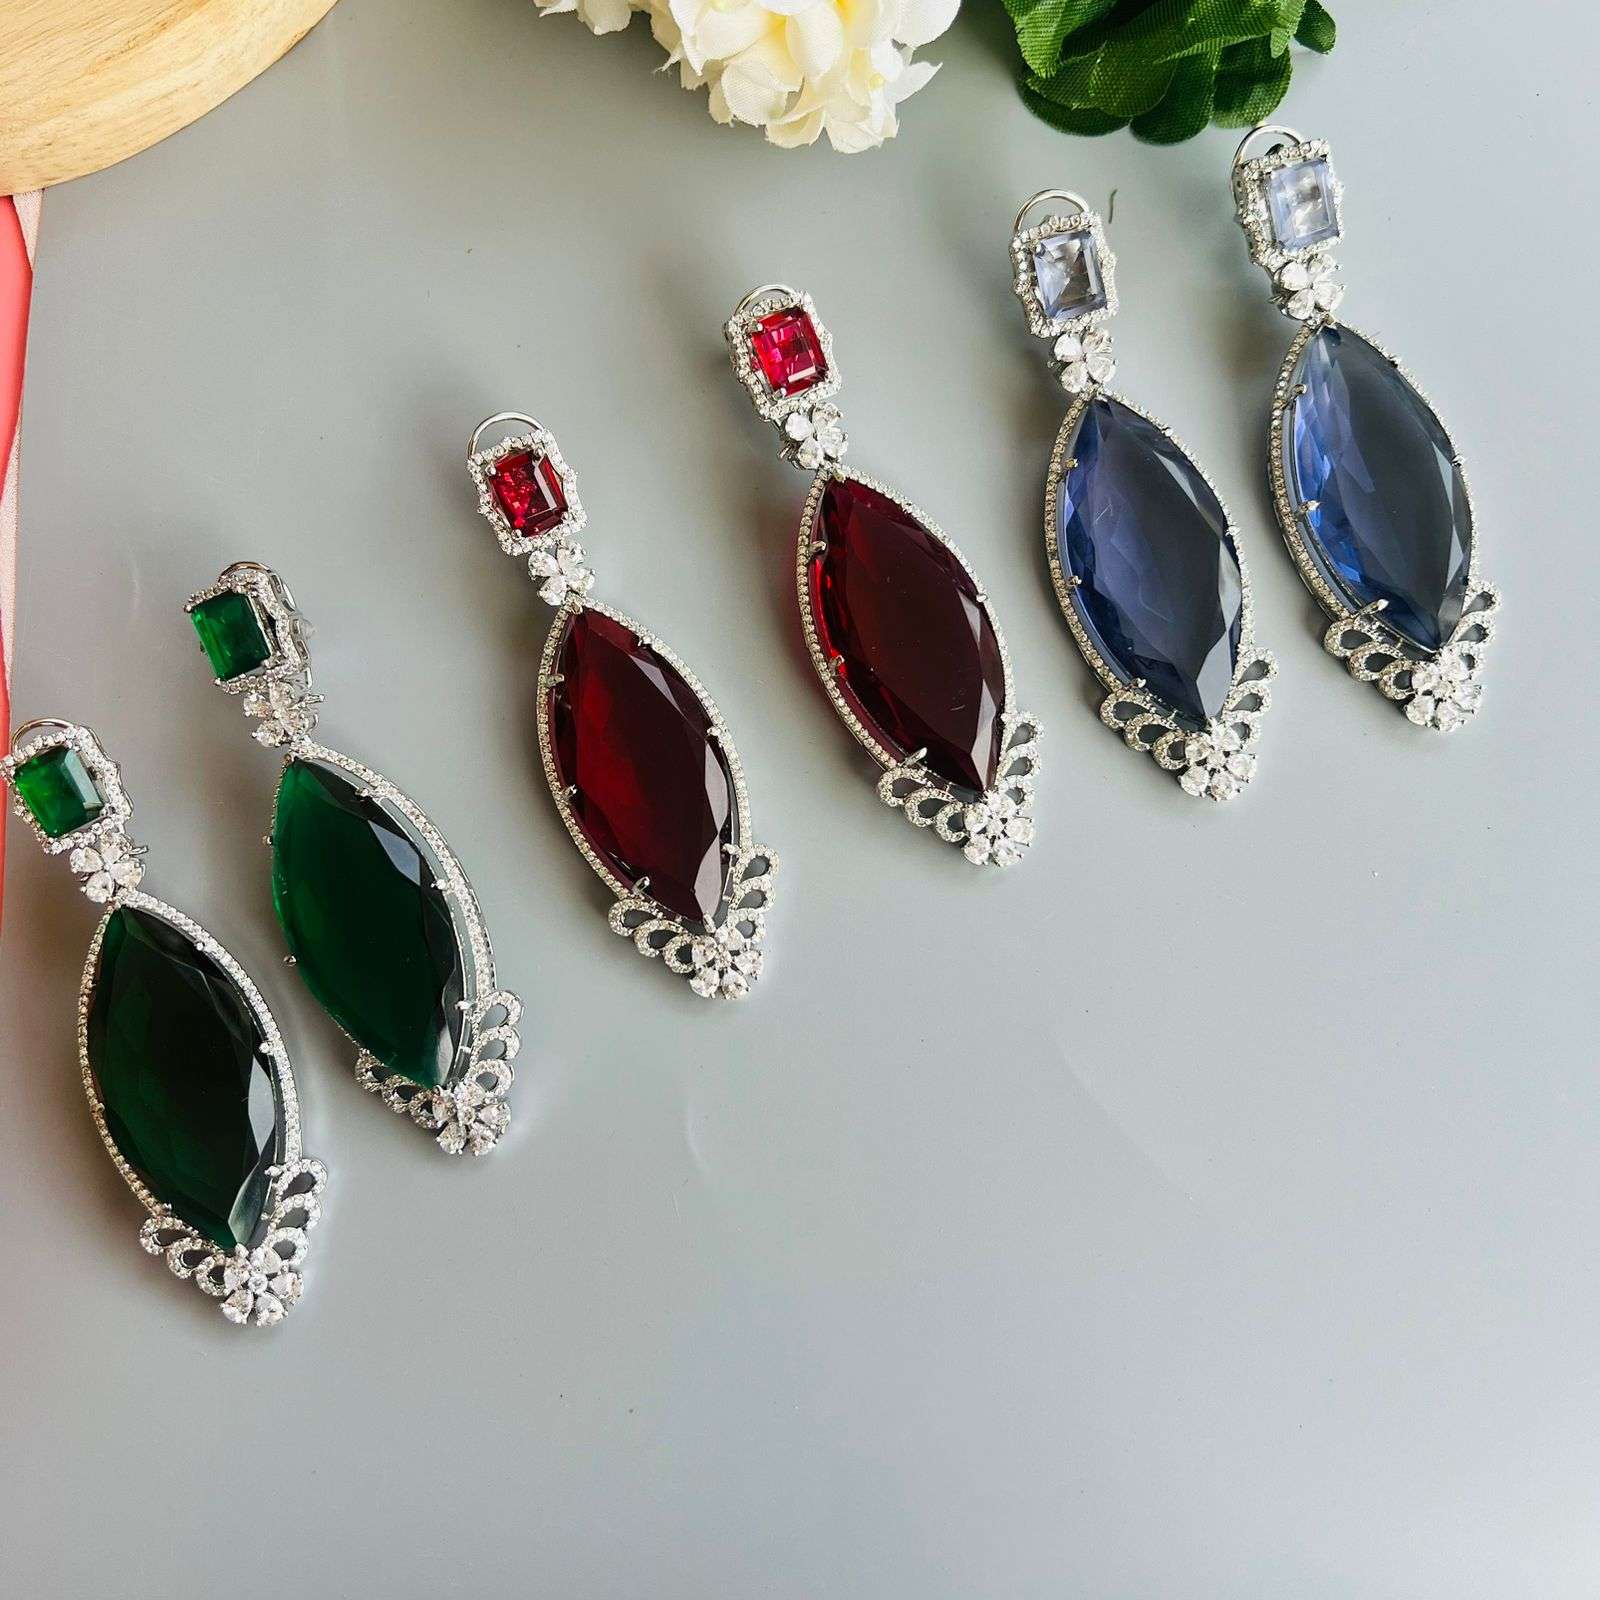 Ad Kinjal earrings Velvet box by Shweta